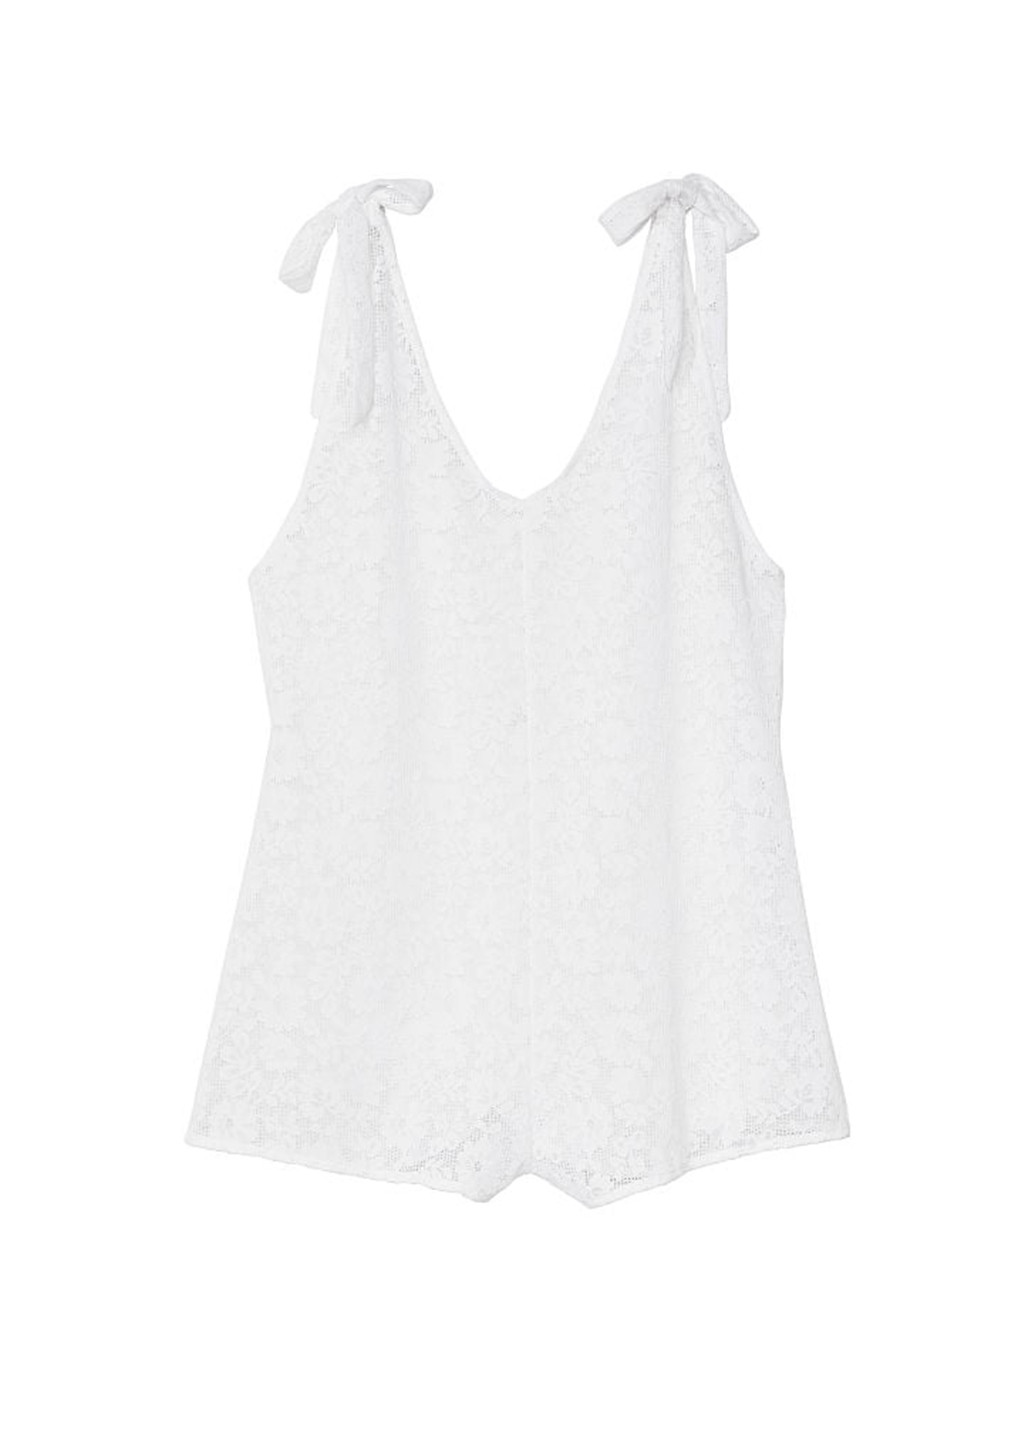 Комбінезон Victoria's Secret комбінезон-шорти однотонний білий пляжний мереживо, поліамід